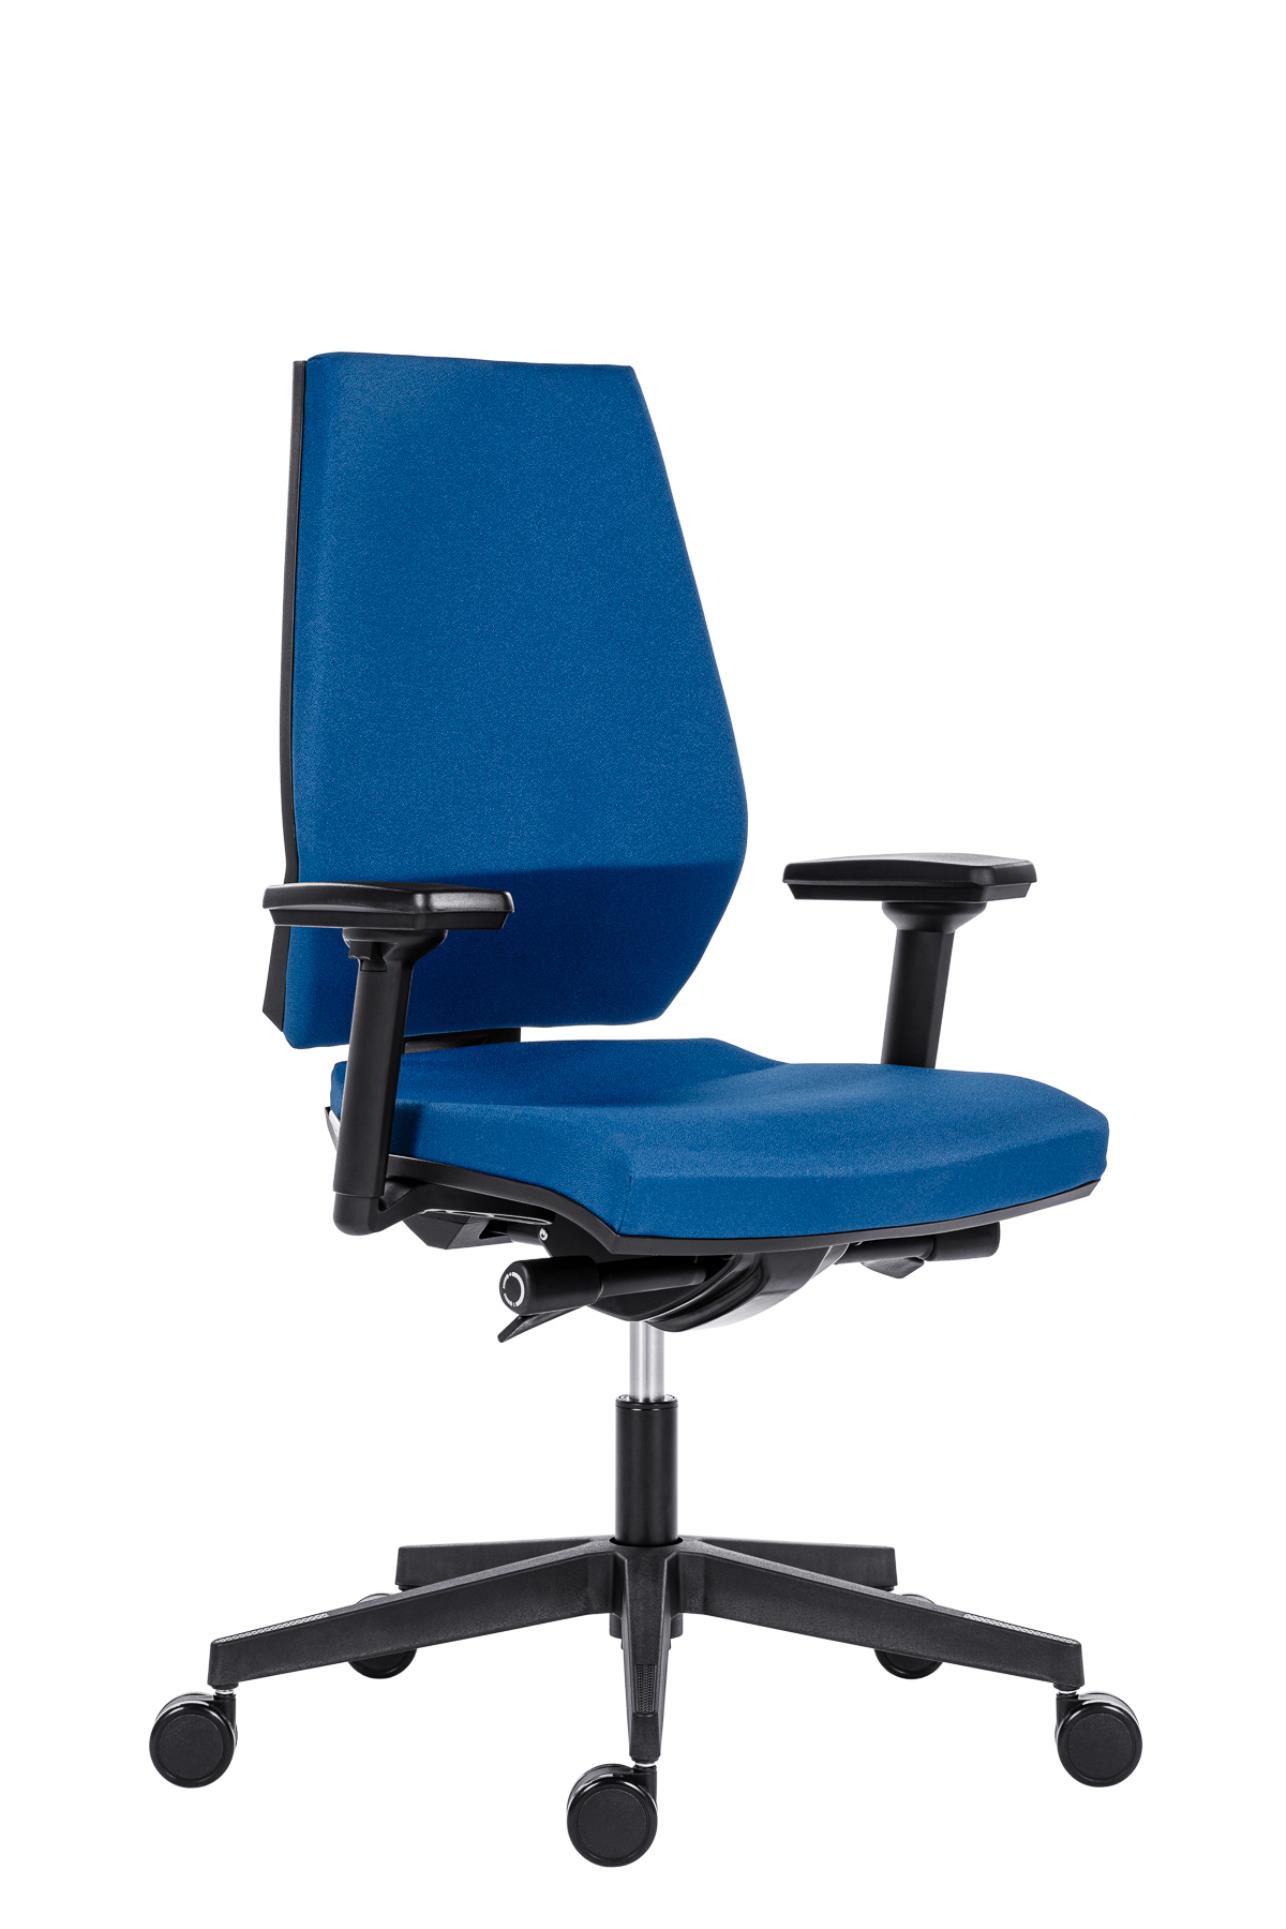 Antares Kancelářská židle Motion - synchro, modrá